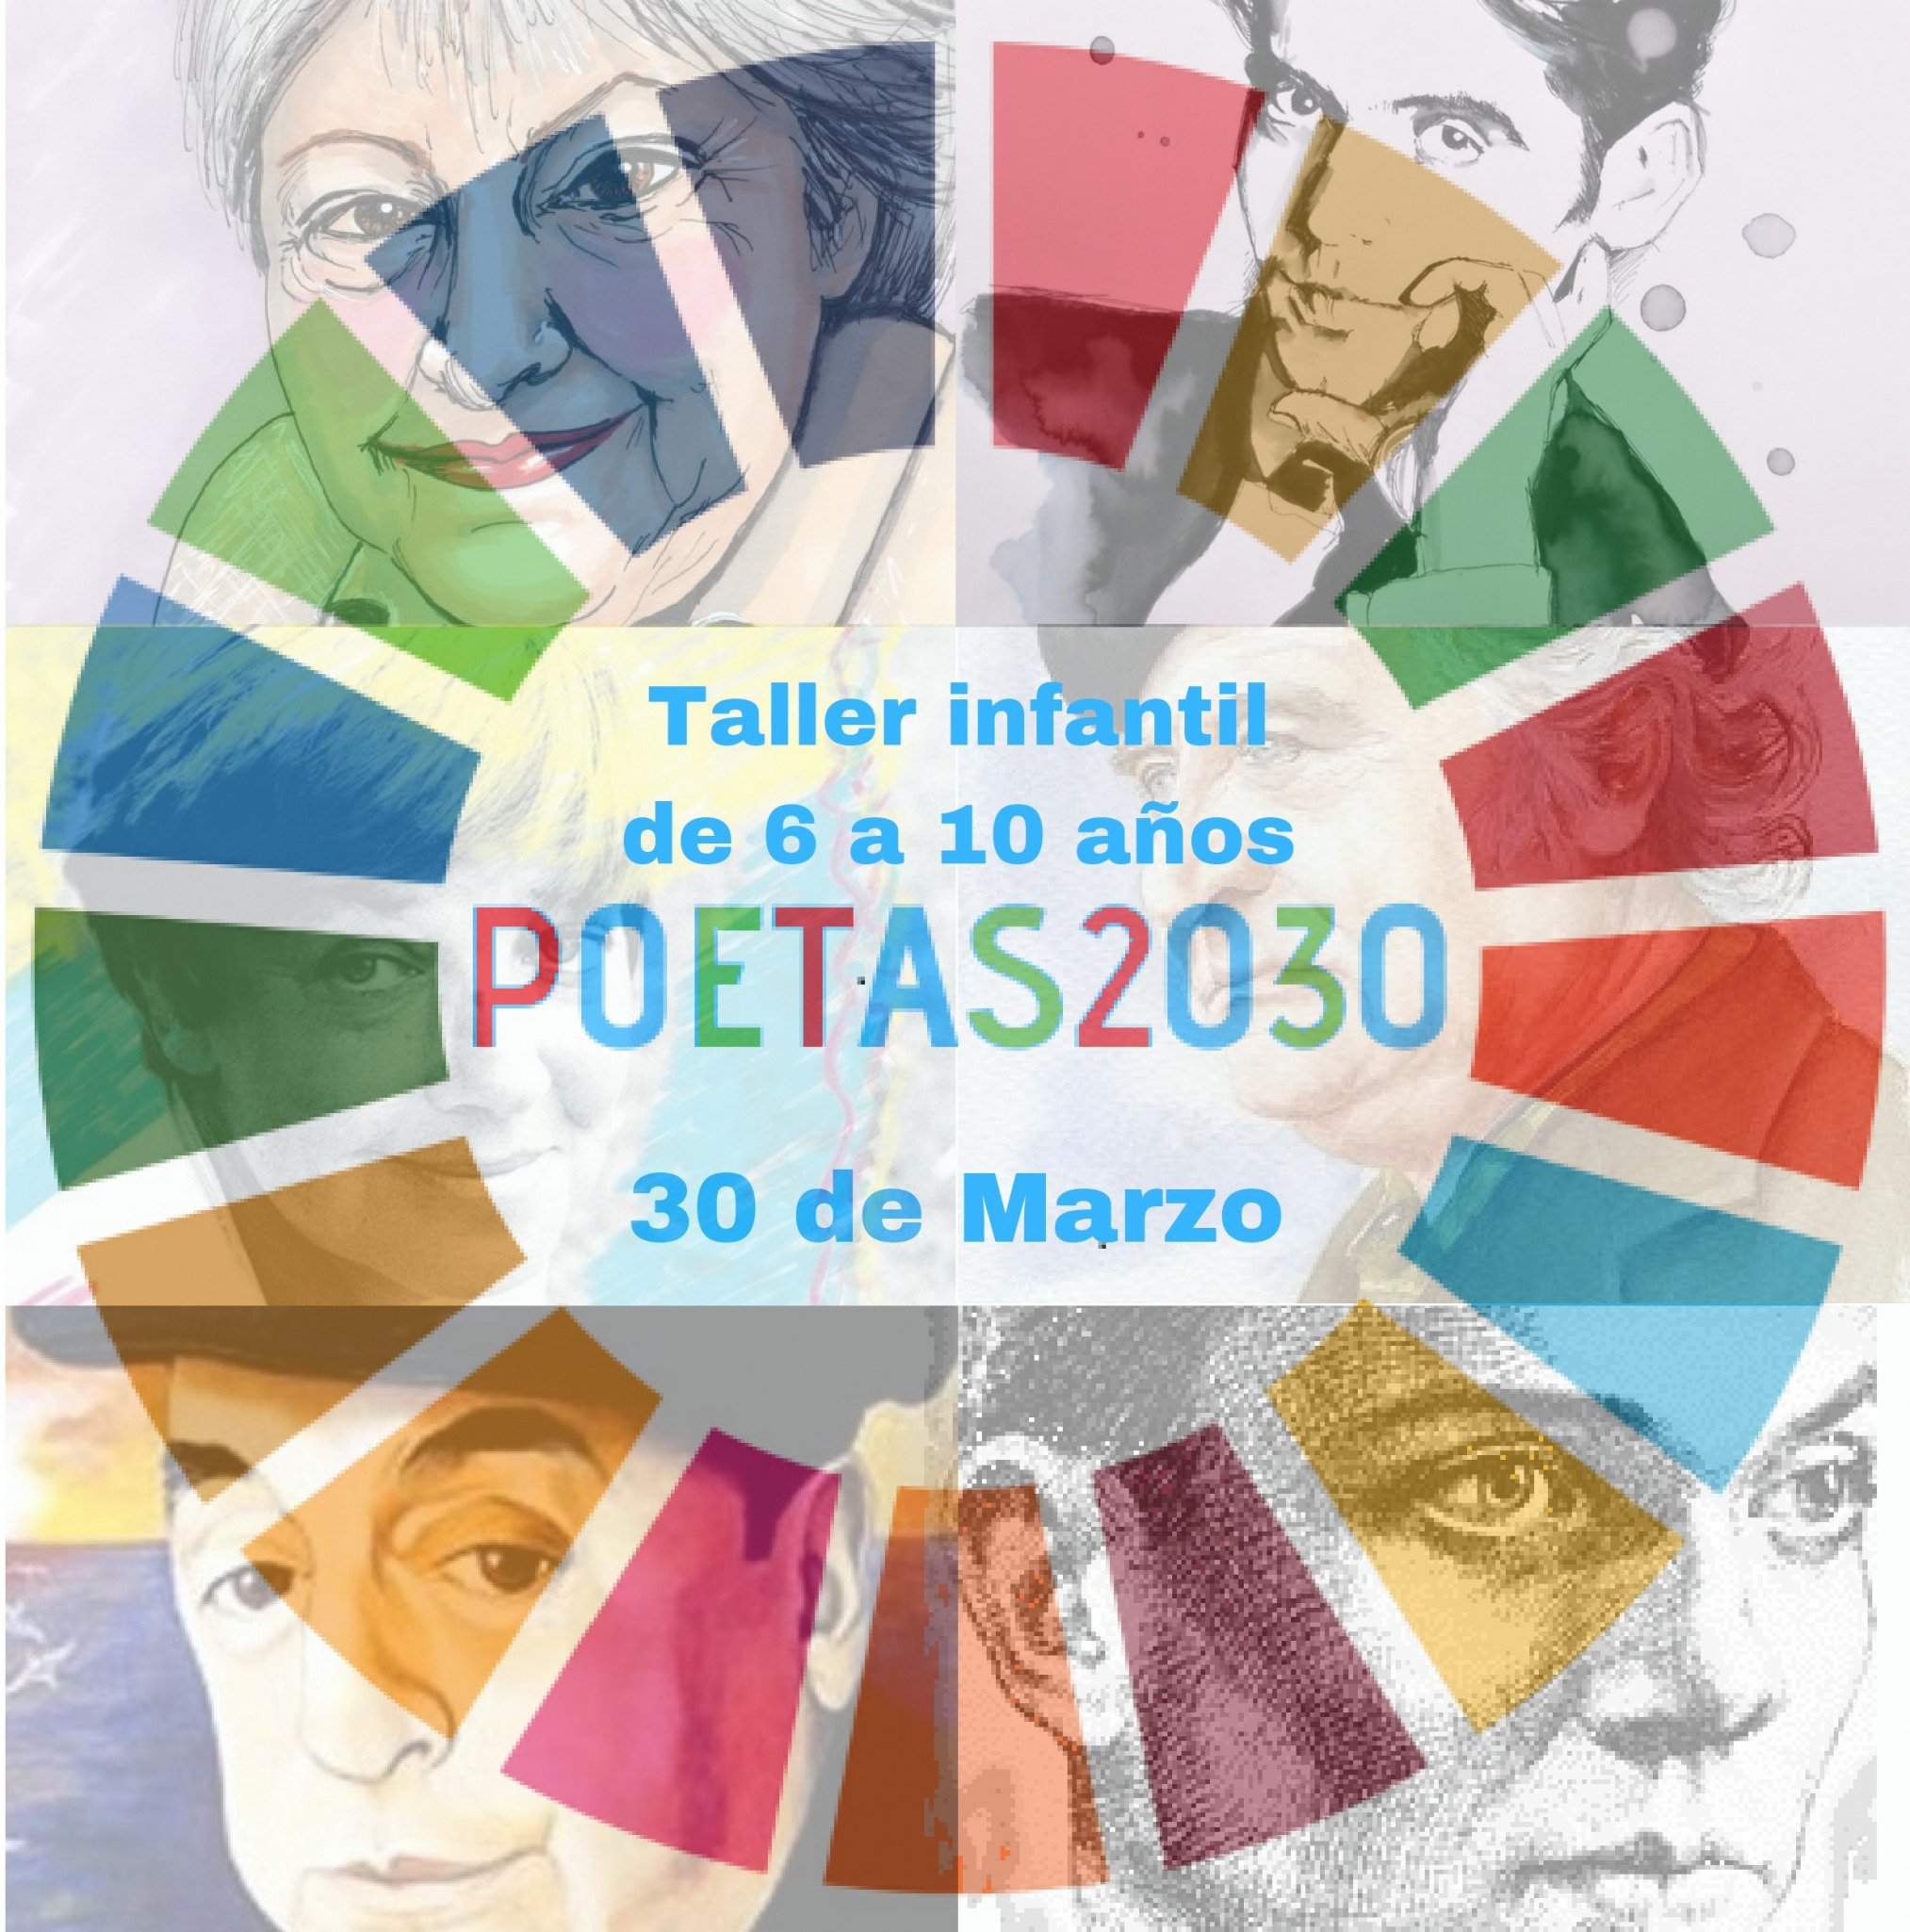 Taller infantil de poesía para un futuro sostenible: Poetas 2030